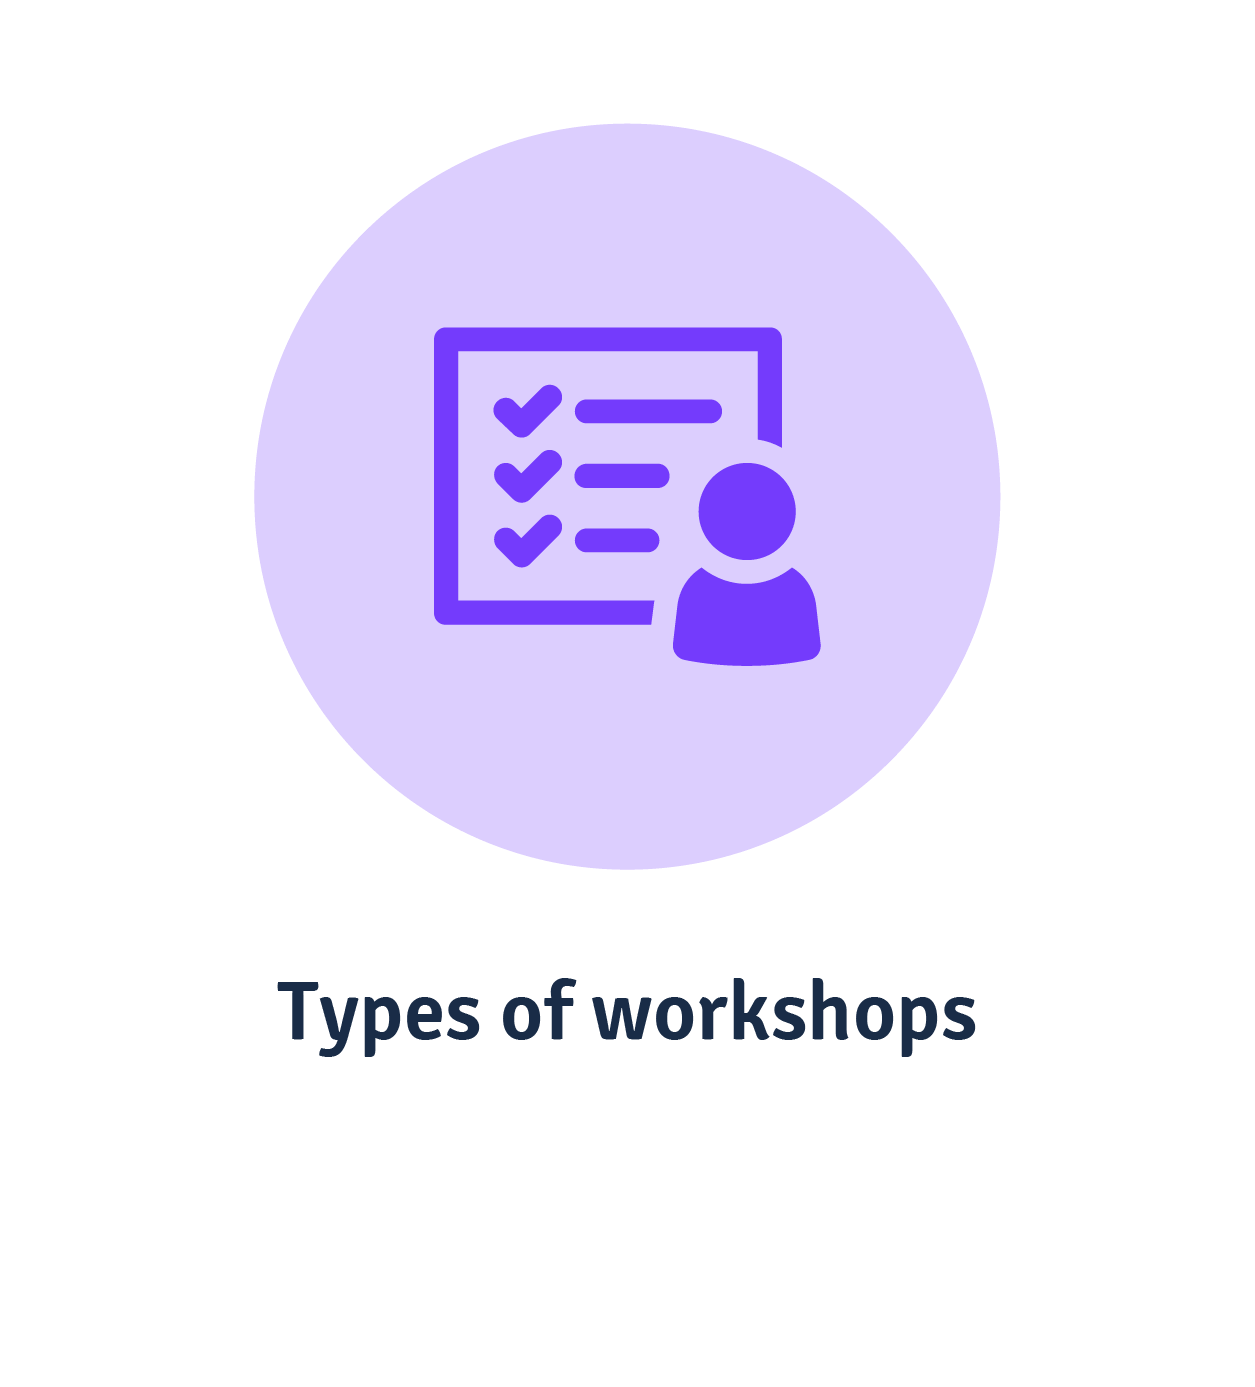 Types of workshops